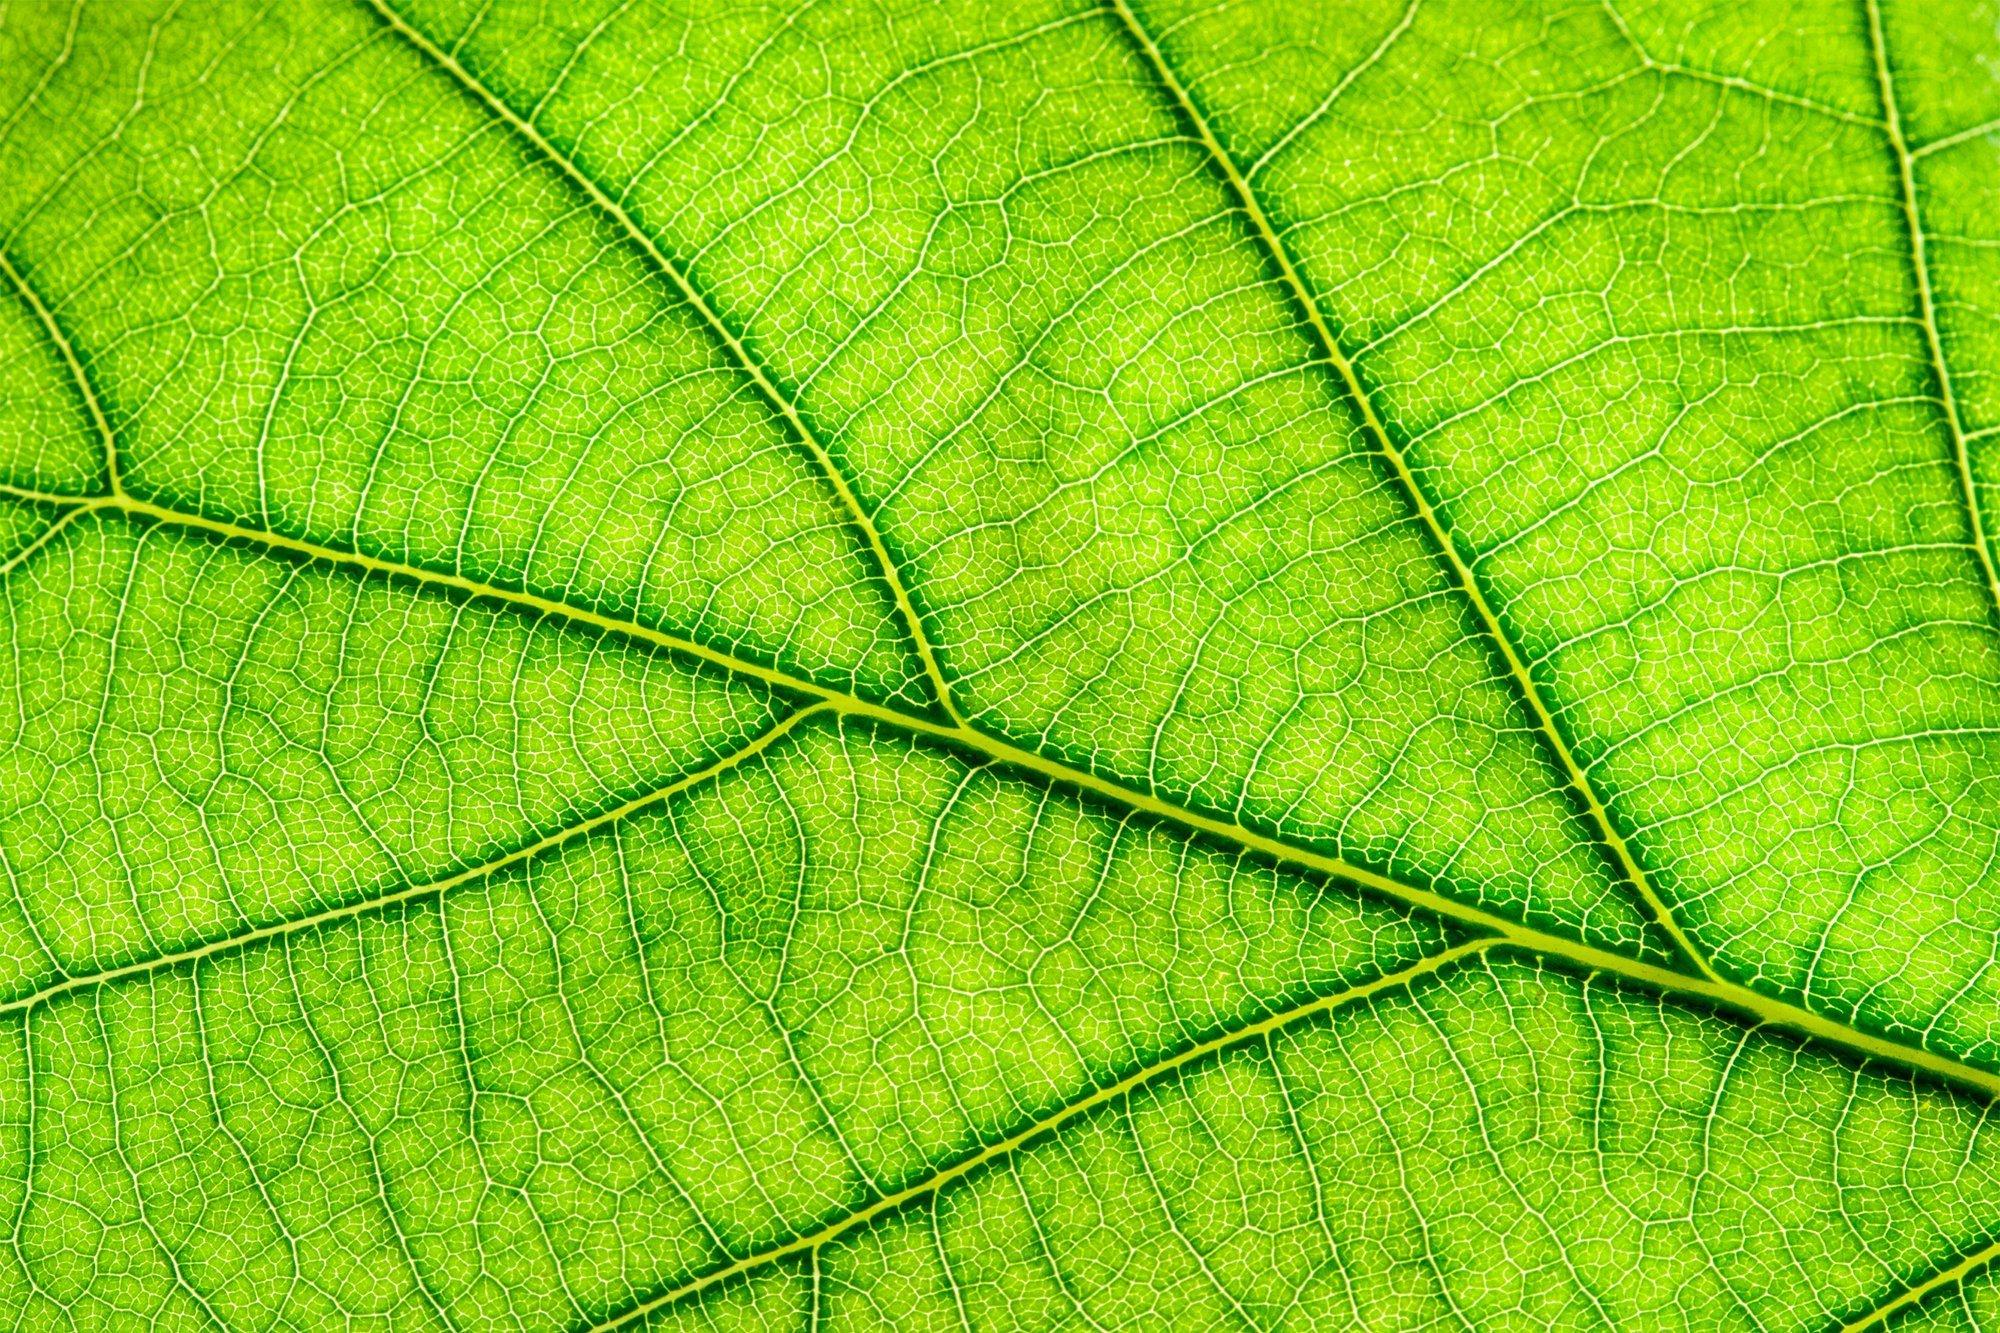 Nahaufnahme eines grünen Blattes, durch das Sonnenlicht scheint und die Blattadern gut sichtbar hervortreten lässt